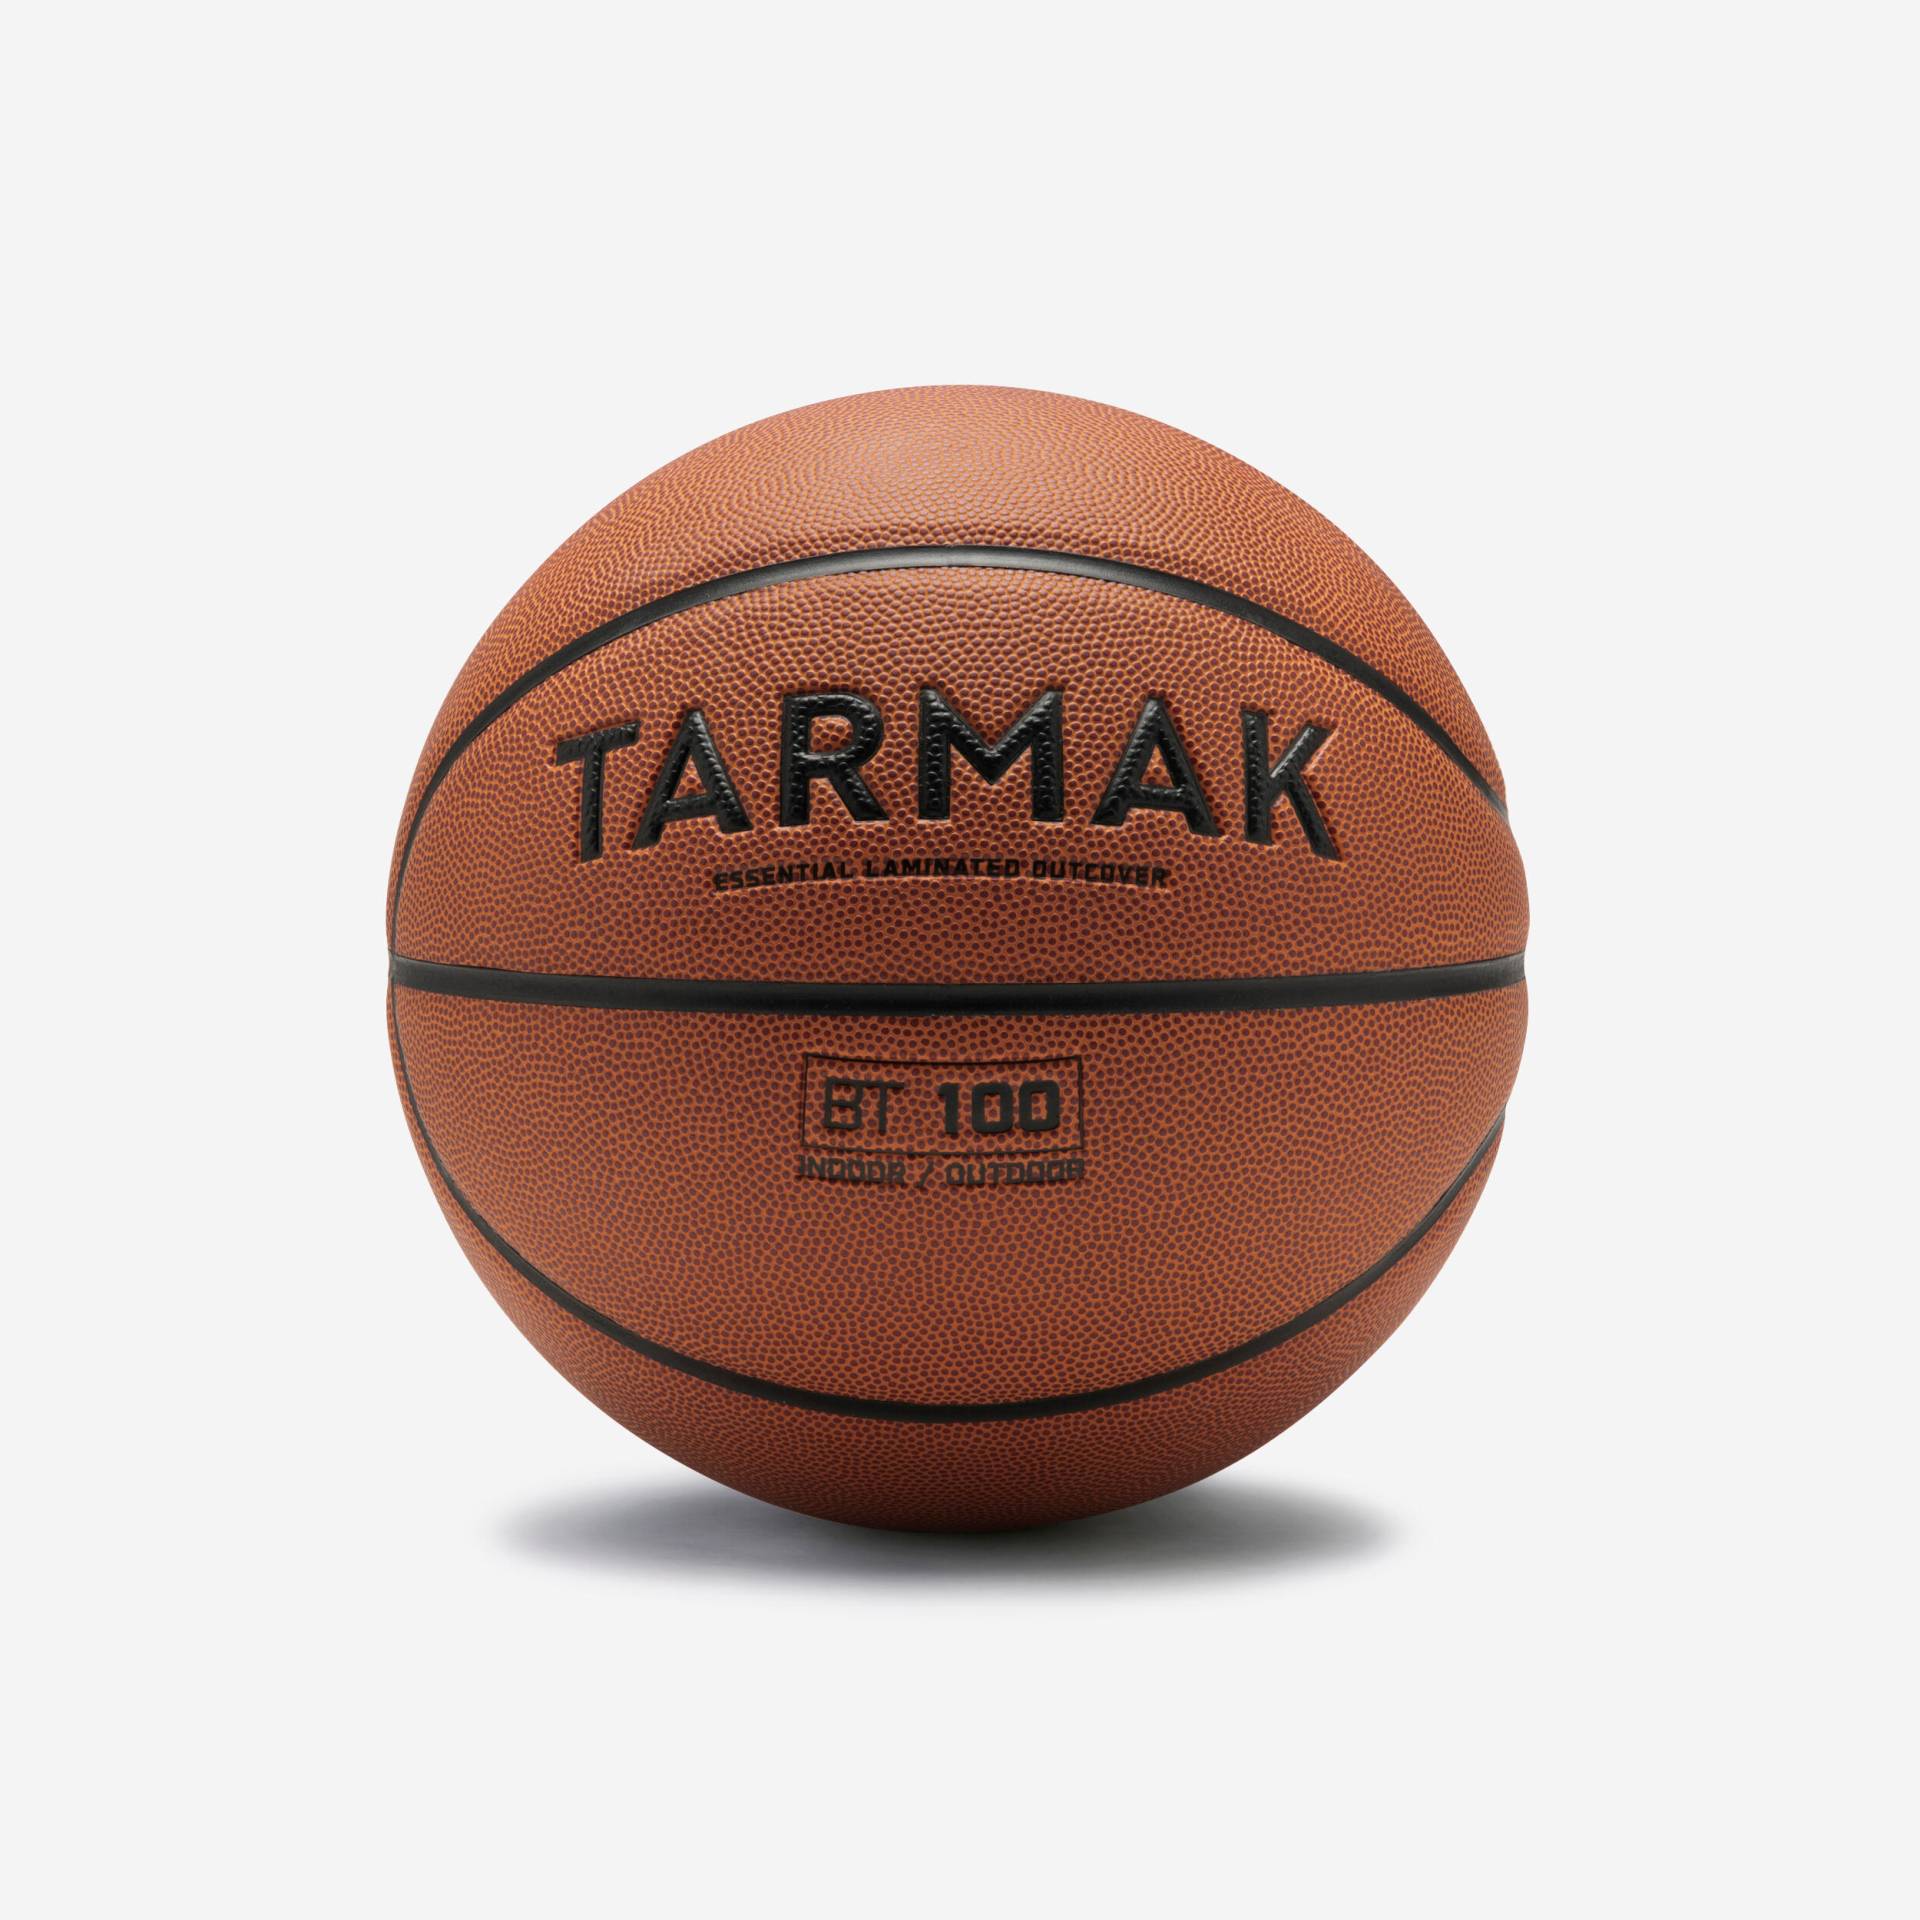 Herren/Jungen Basketball Grösse 7 ab 13 Jahren - BT100 orange von TARMAK